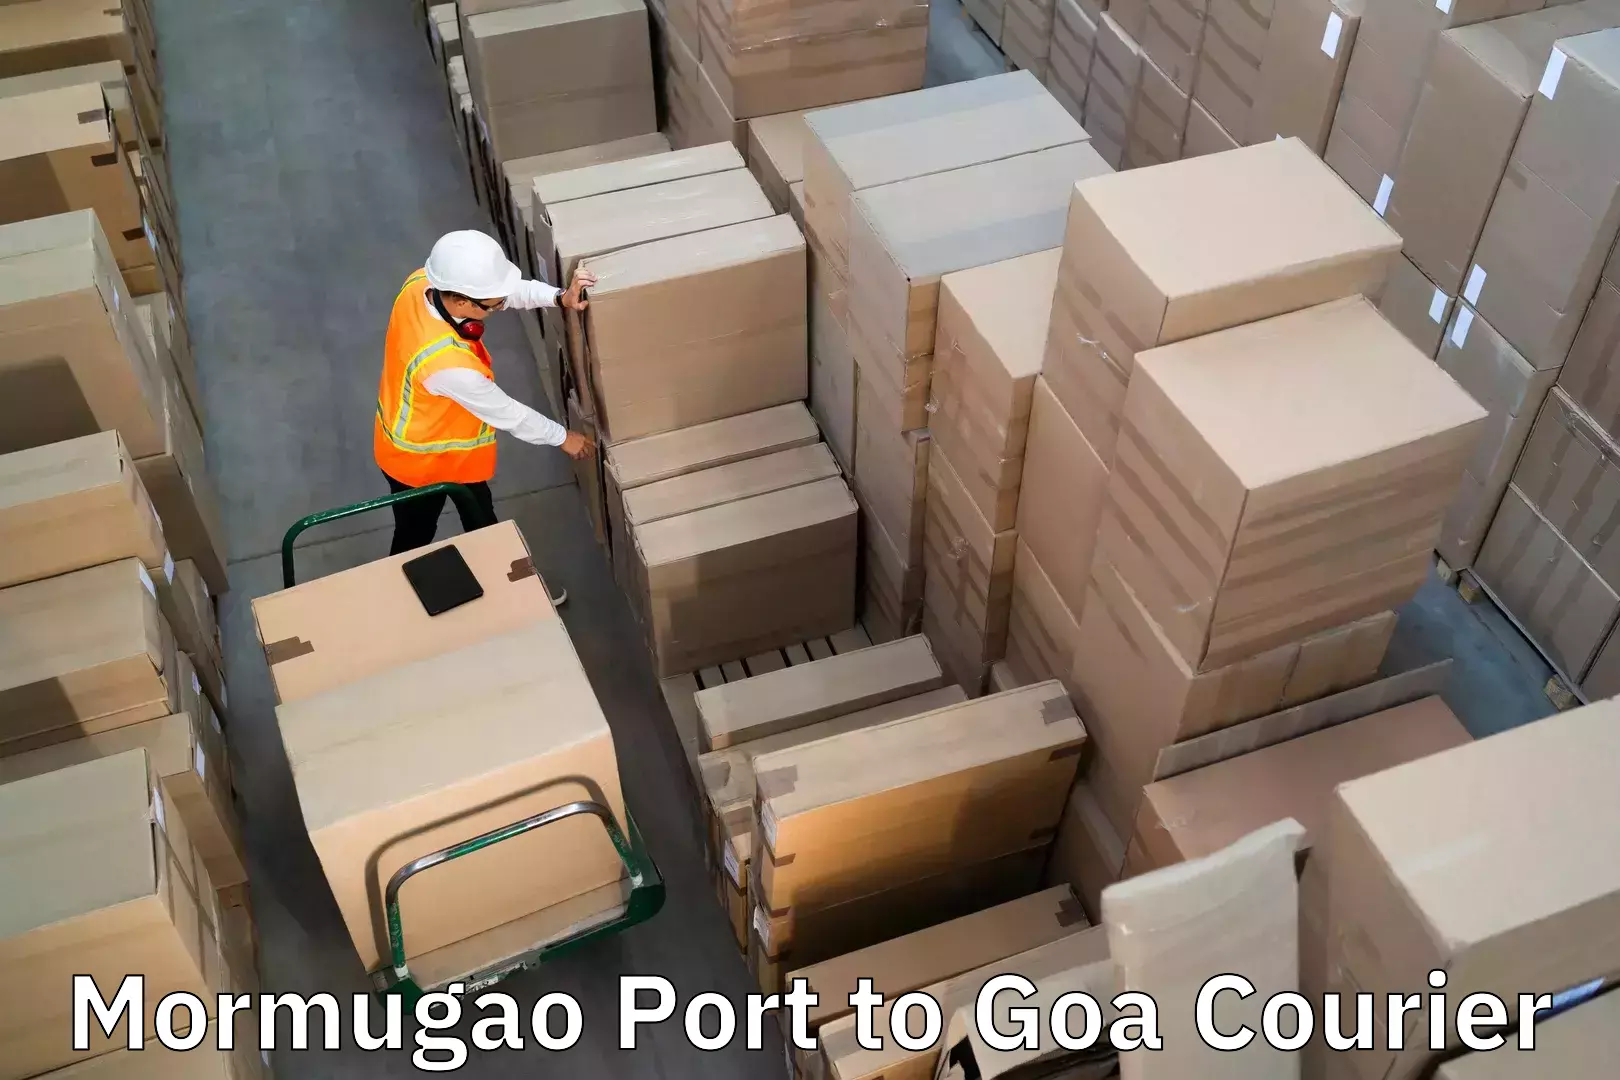 Excess baggage transport Mormugao Port to Sanvordem